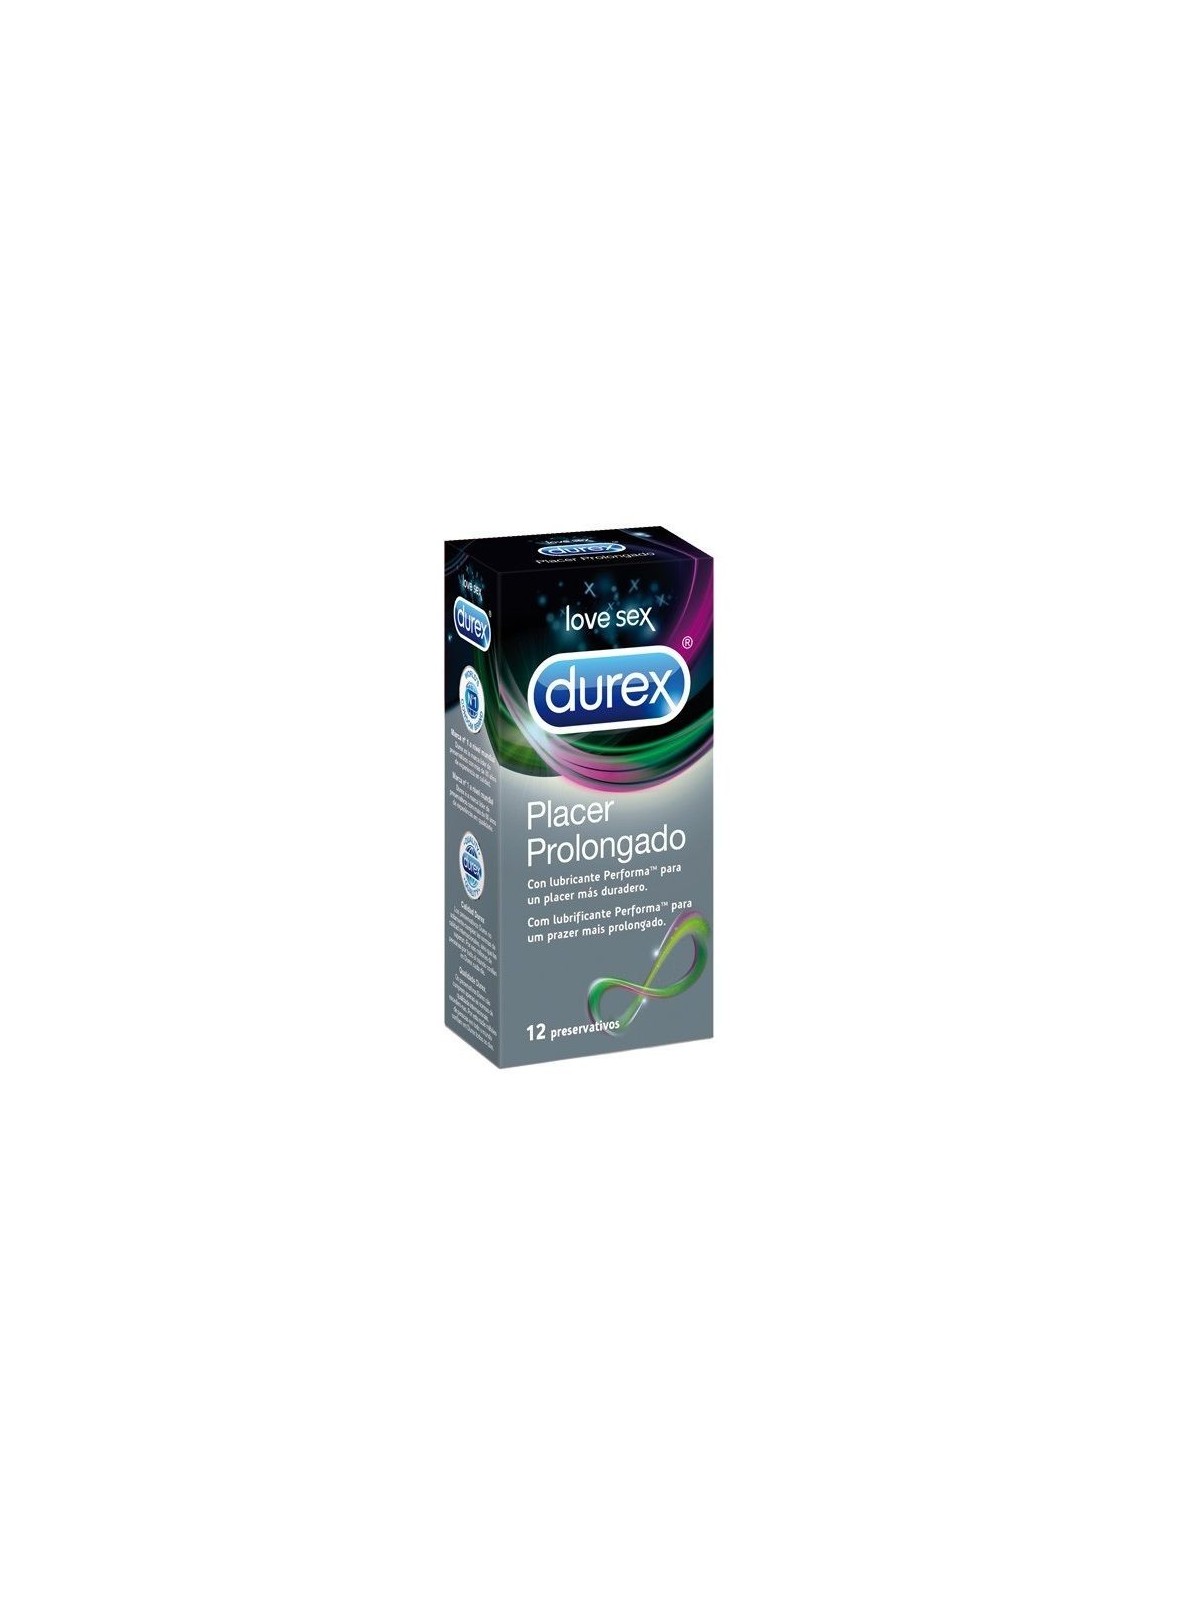 Durex Placer Prolongado Retardante 12 uds - Comprar Condones especiales Durex - Preservativos especiales (1)